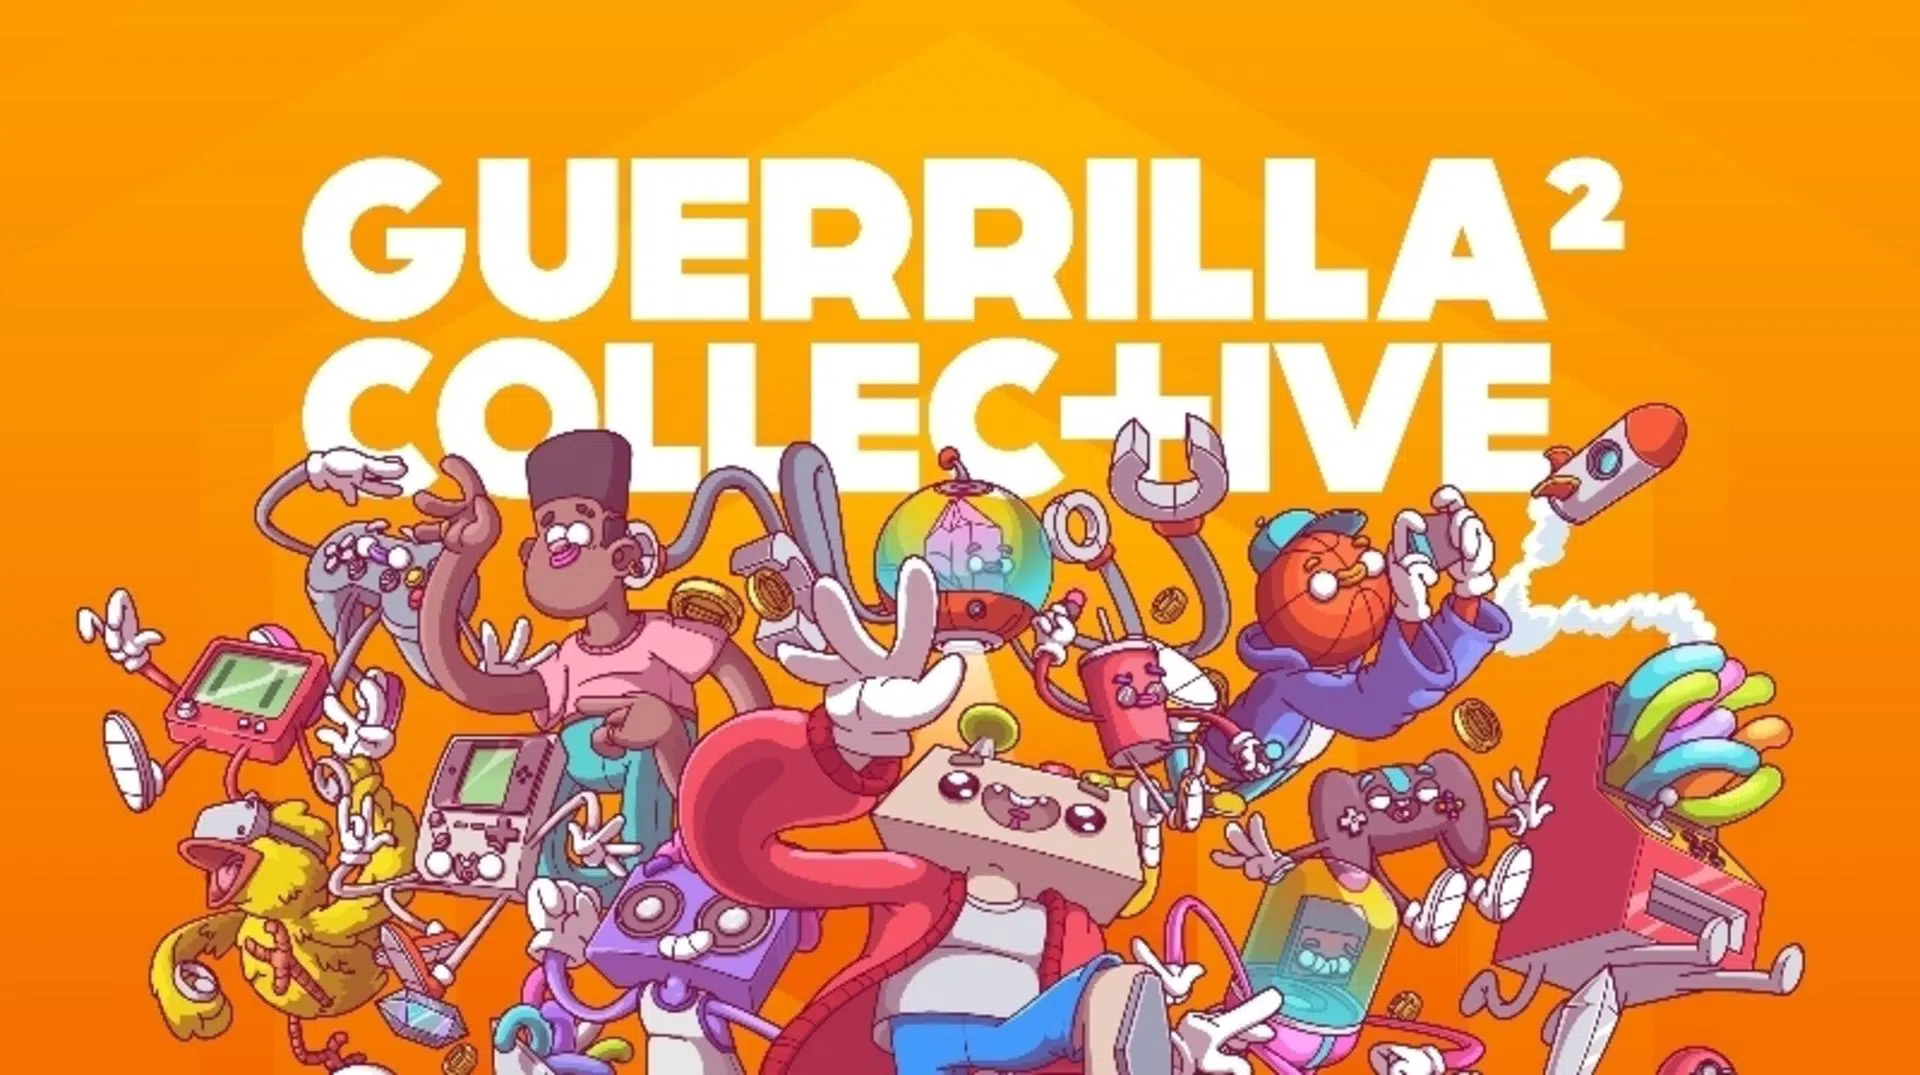 Guerrilla Collective secondo E3